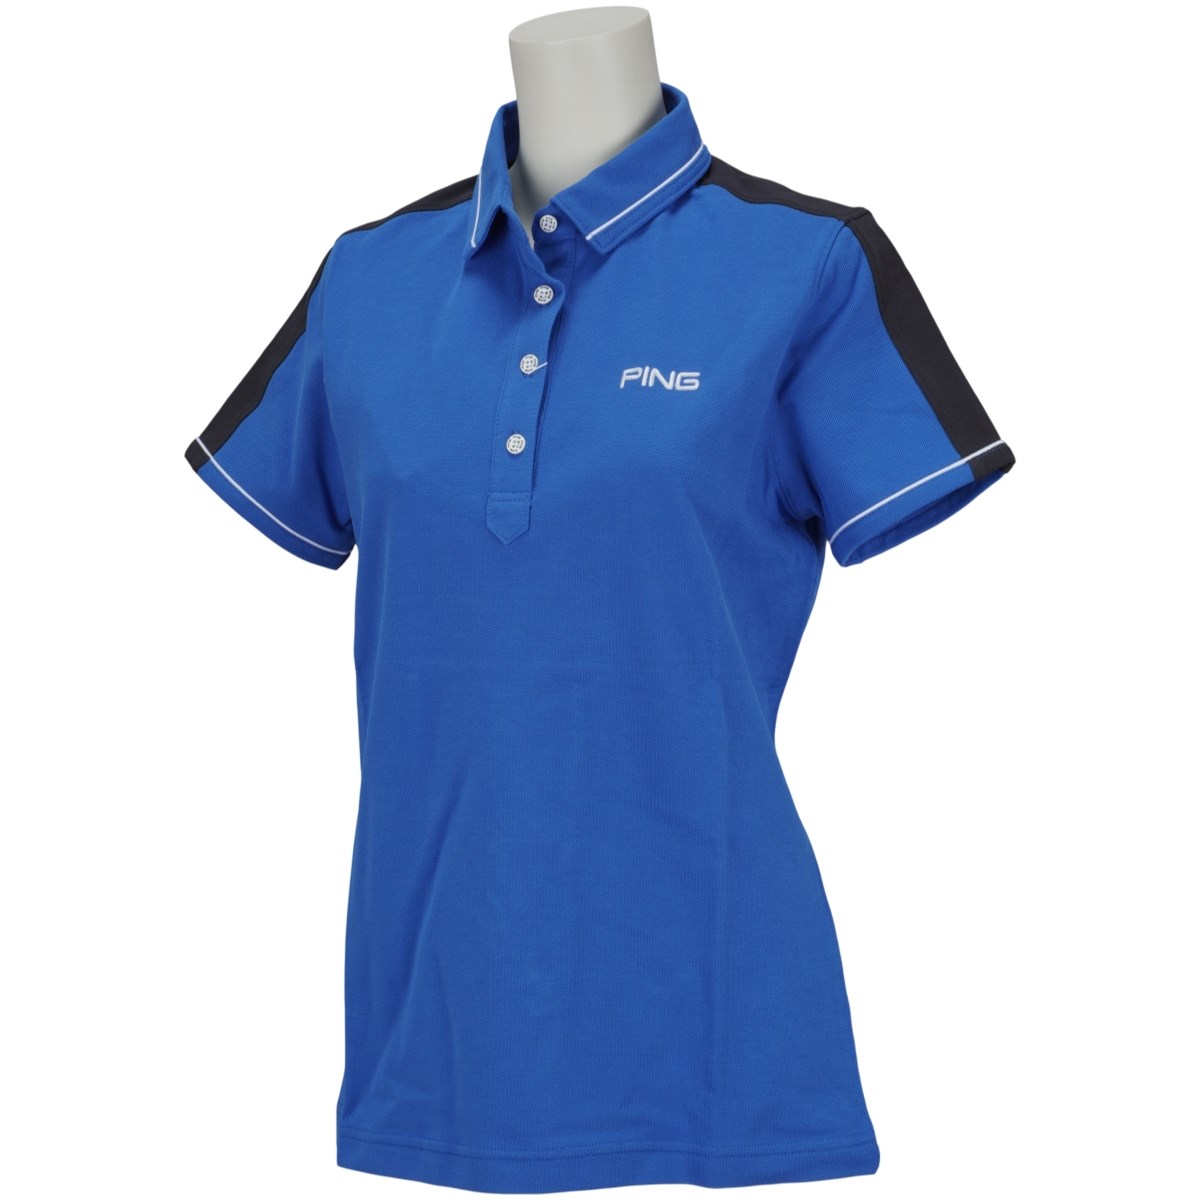 [アウトレット] [在庫限りのお買い得商品] ピン PING 半袖ポロシャツ ブルー 111 レディース ゴルフウェア